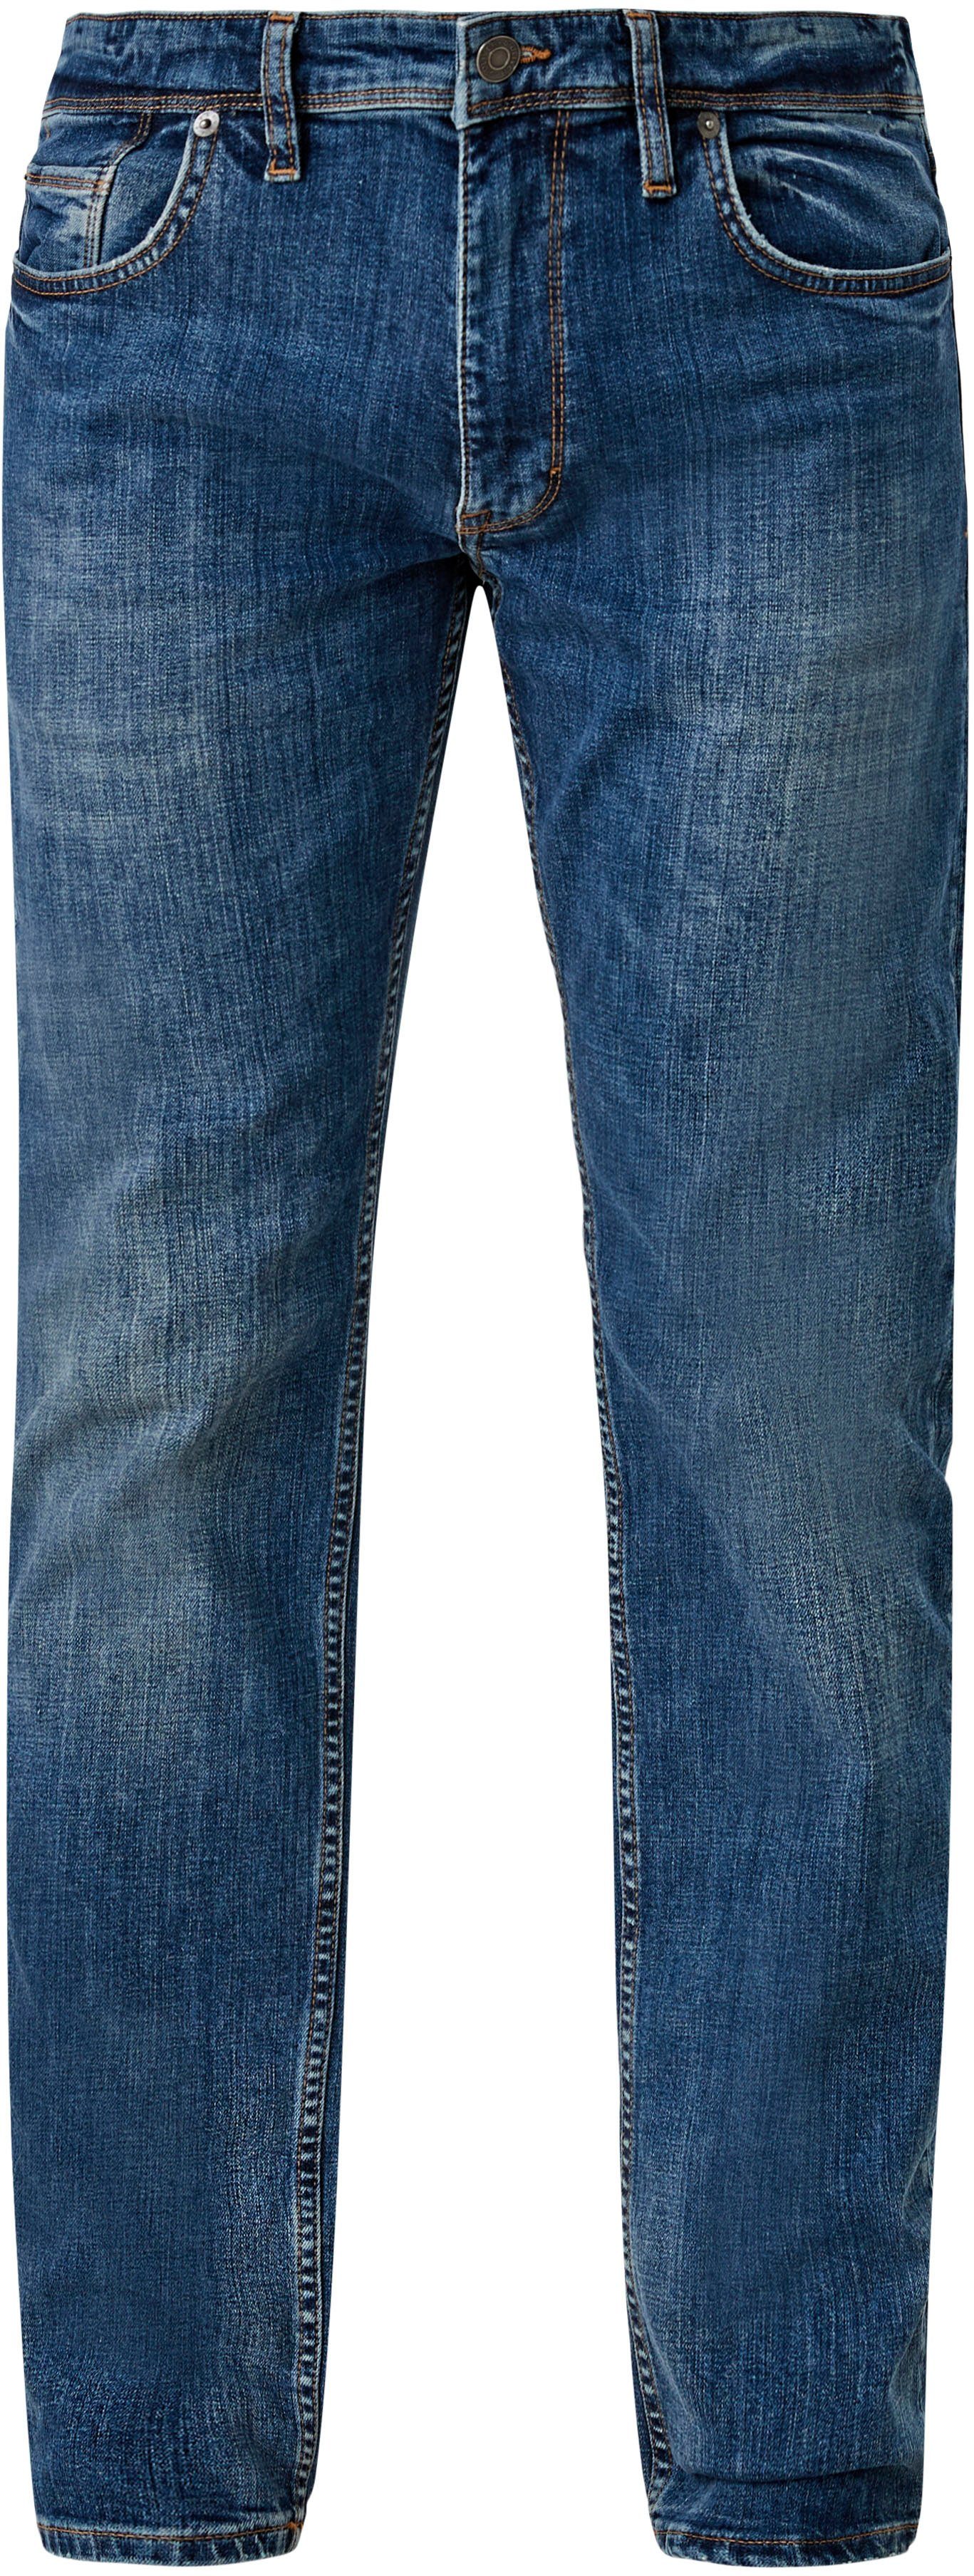 mit ozeanblau authentischer s.Oliver 5-Pocket-Jeans Waschung